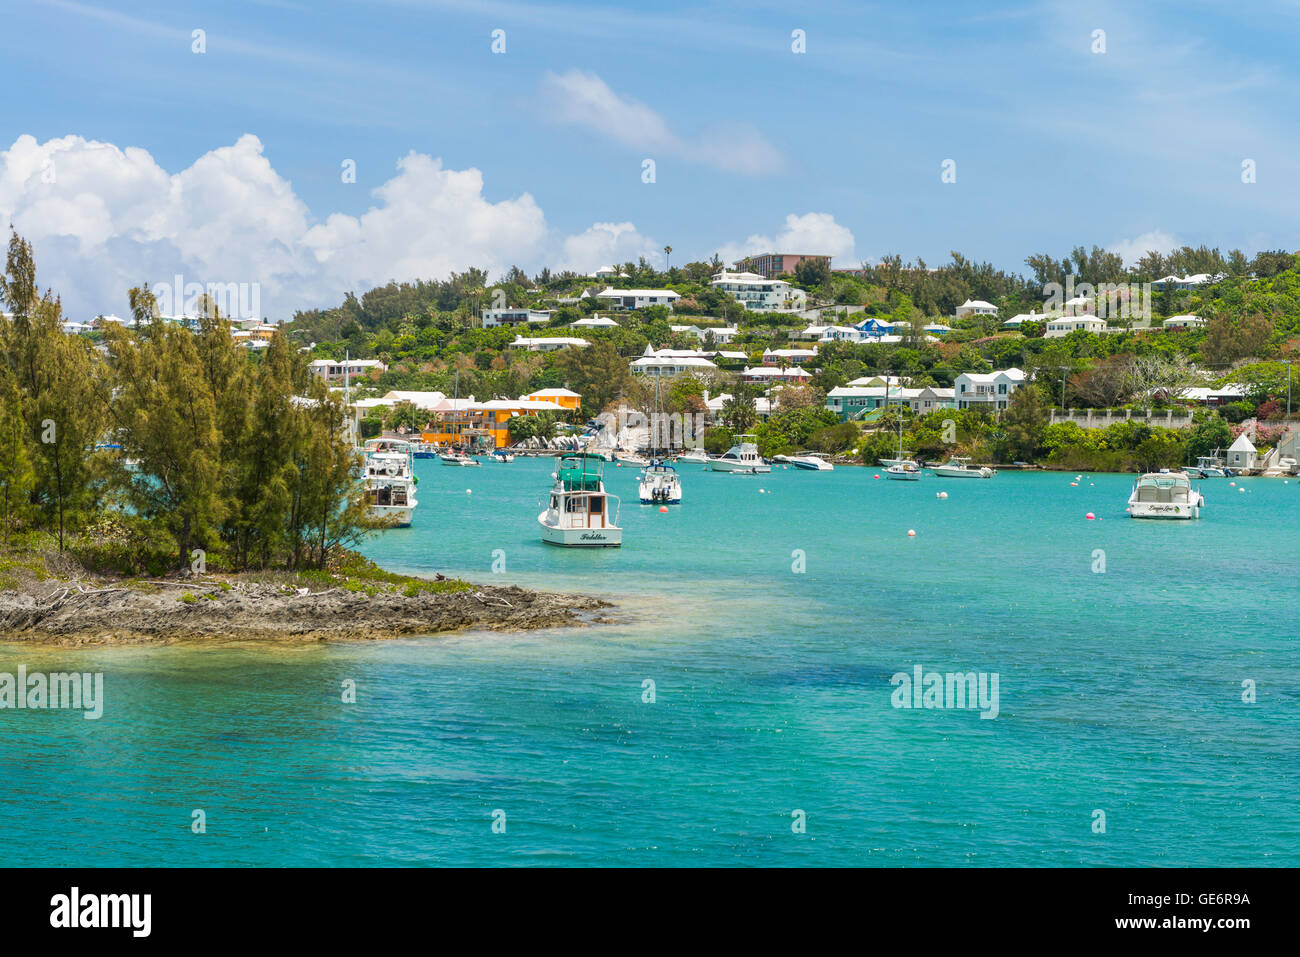 Entrée de la baie du Juif, les Bermudes, avec l'hôtel Fairmont Southampton luxury resort visible en haut de la colline. Banque D'Images